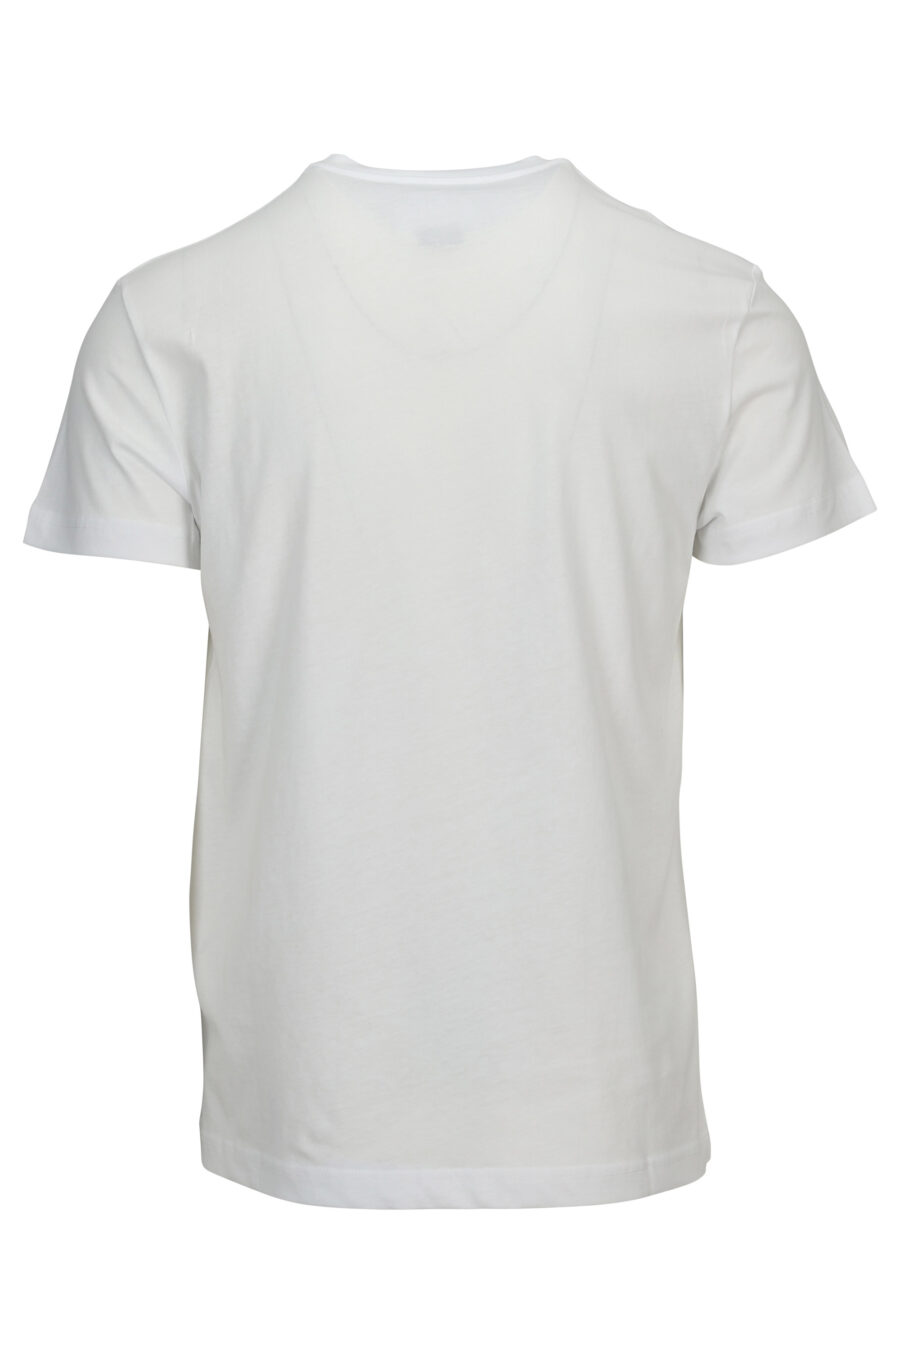 T-shirt branca com maxilogo em aguarela barroca - 8052019589405 1